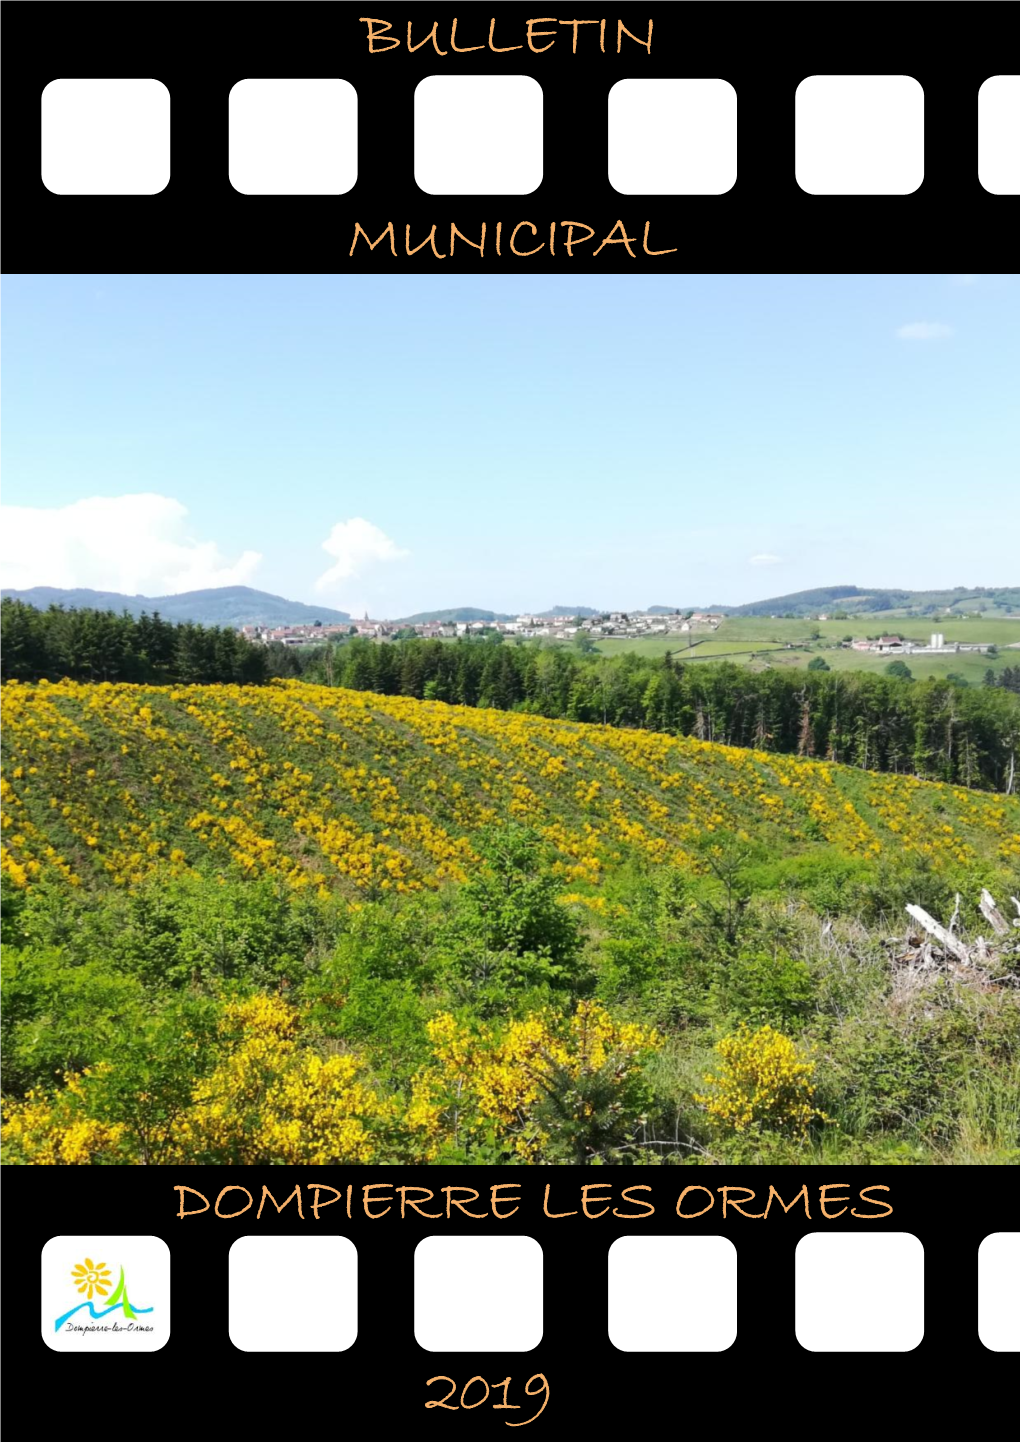 Municipal Dompierre Les Ormes 2019 Bulletin